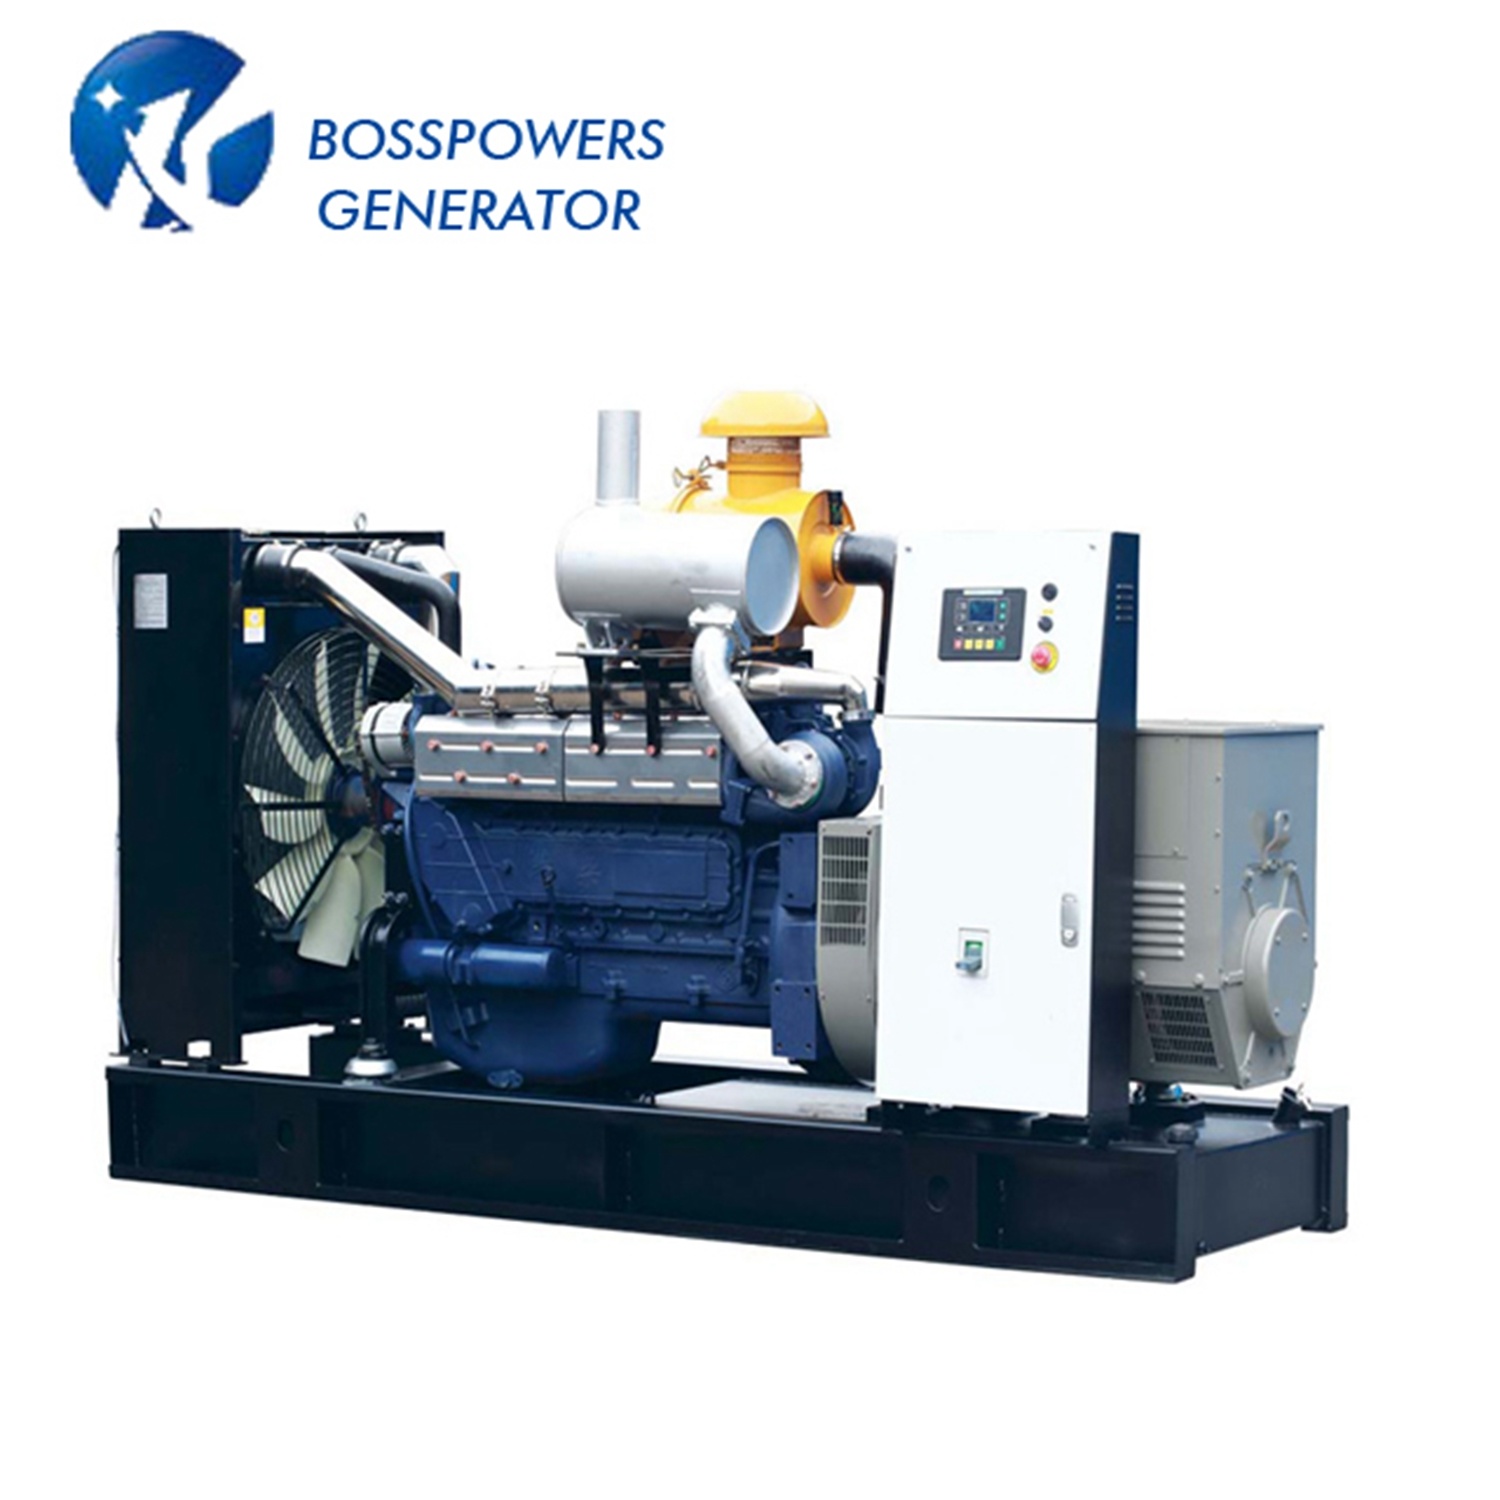 Soundproof Silent Genset 80kw Diesel Engine Generator Set 100kVA Generator